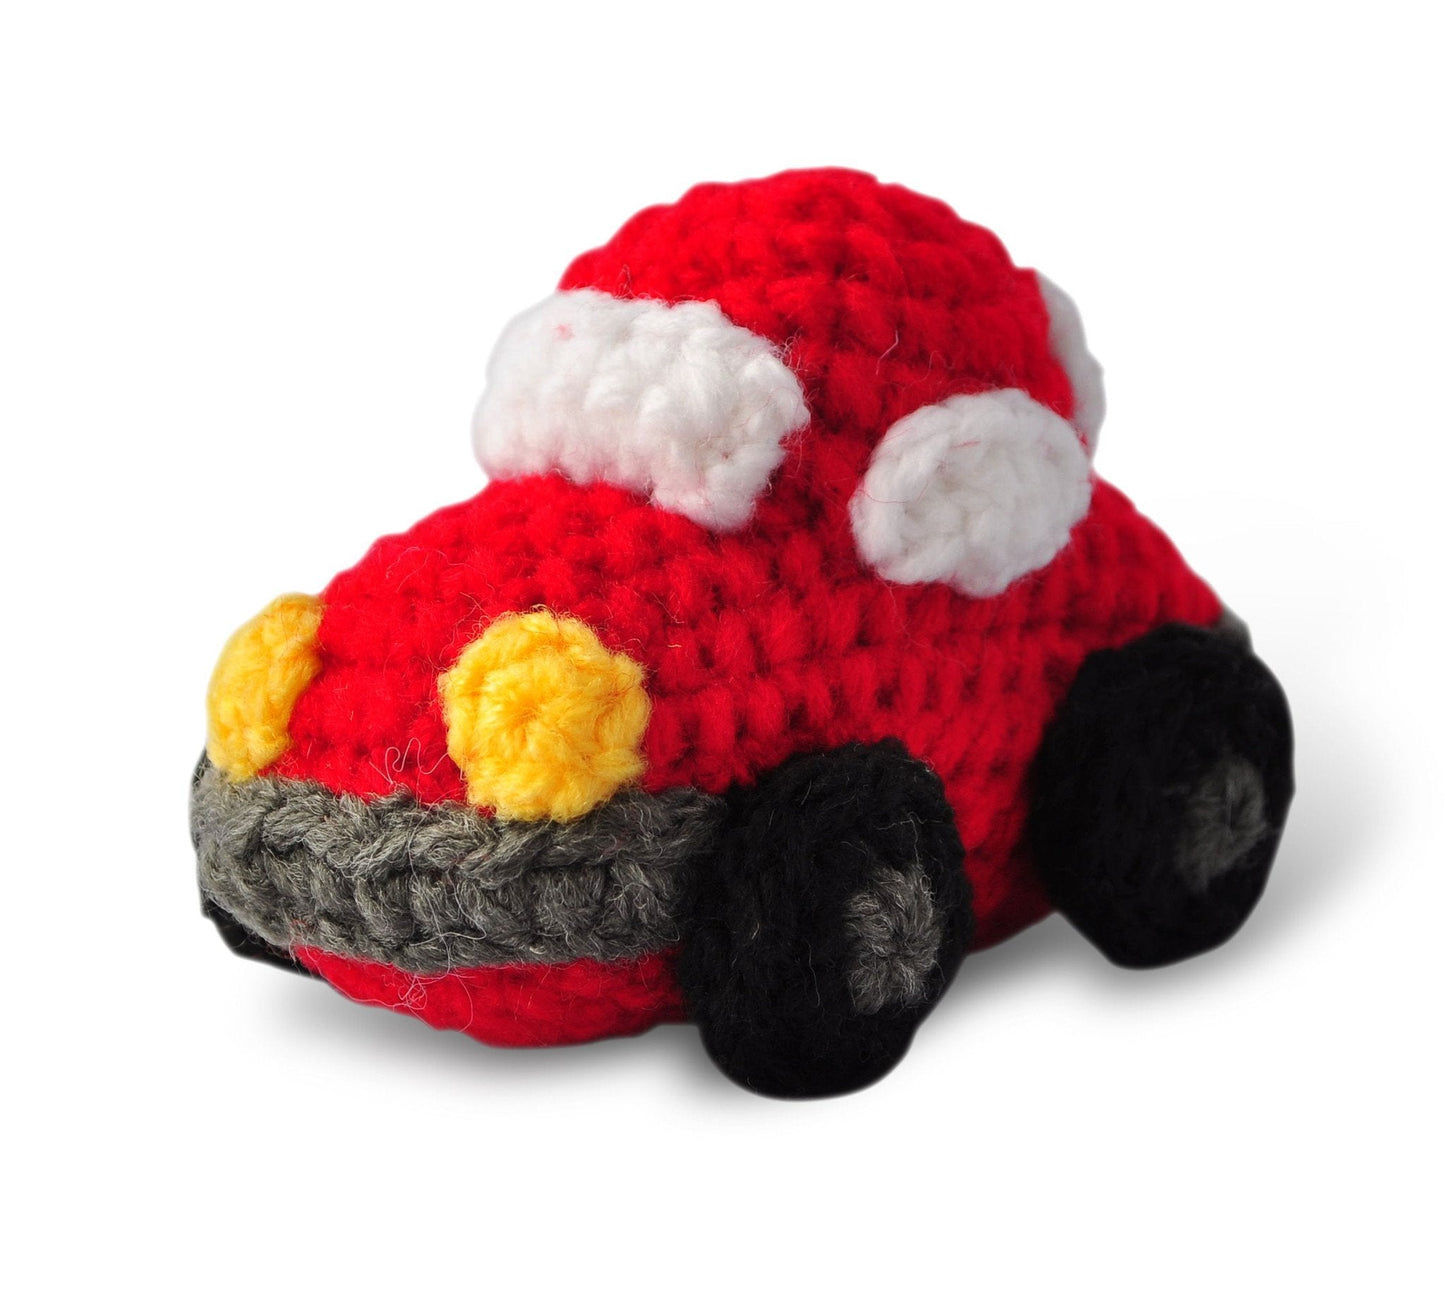 Car Toy Handmade Amigurumi Stuffed Toy Knit Crochet Doll VAC